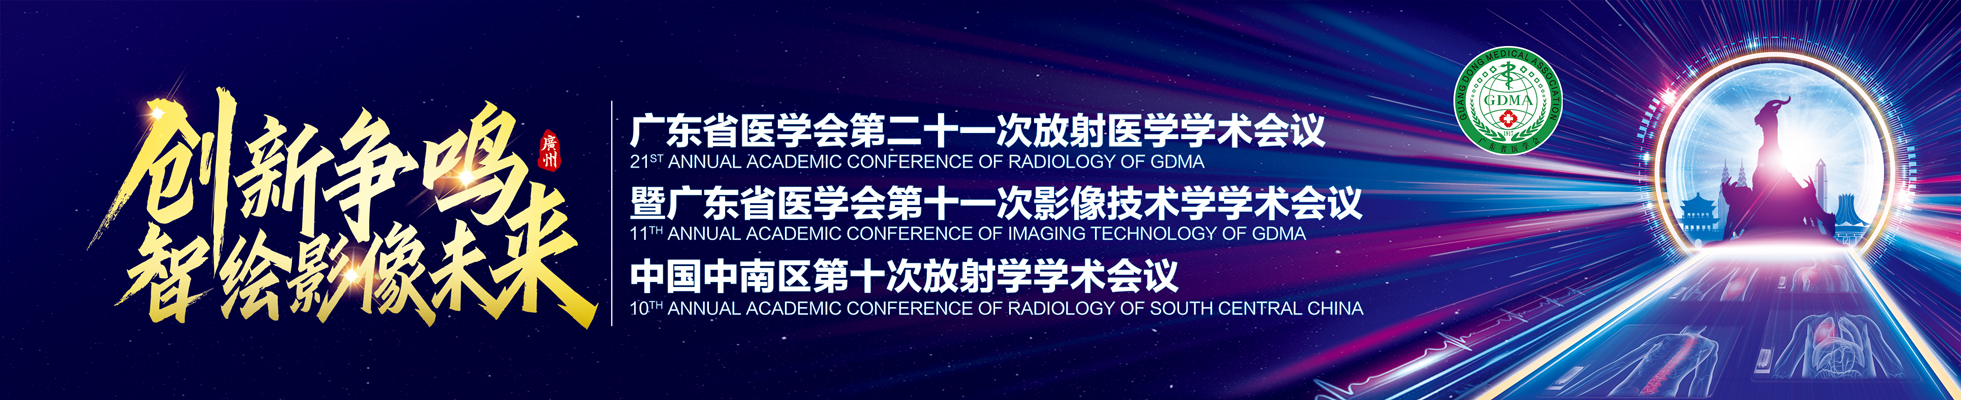 广东省医学会第二十一次放射医学学术会议暨广东省医学会第十一次影像技术学学术会议及中国中南区第十次放射学学术会议